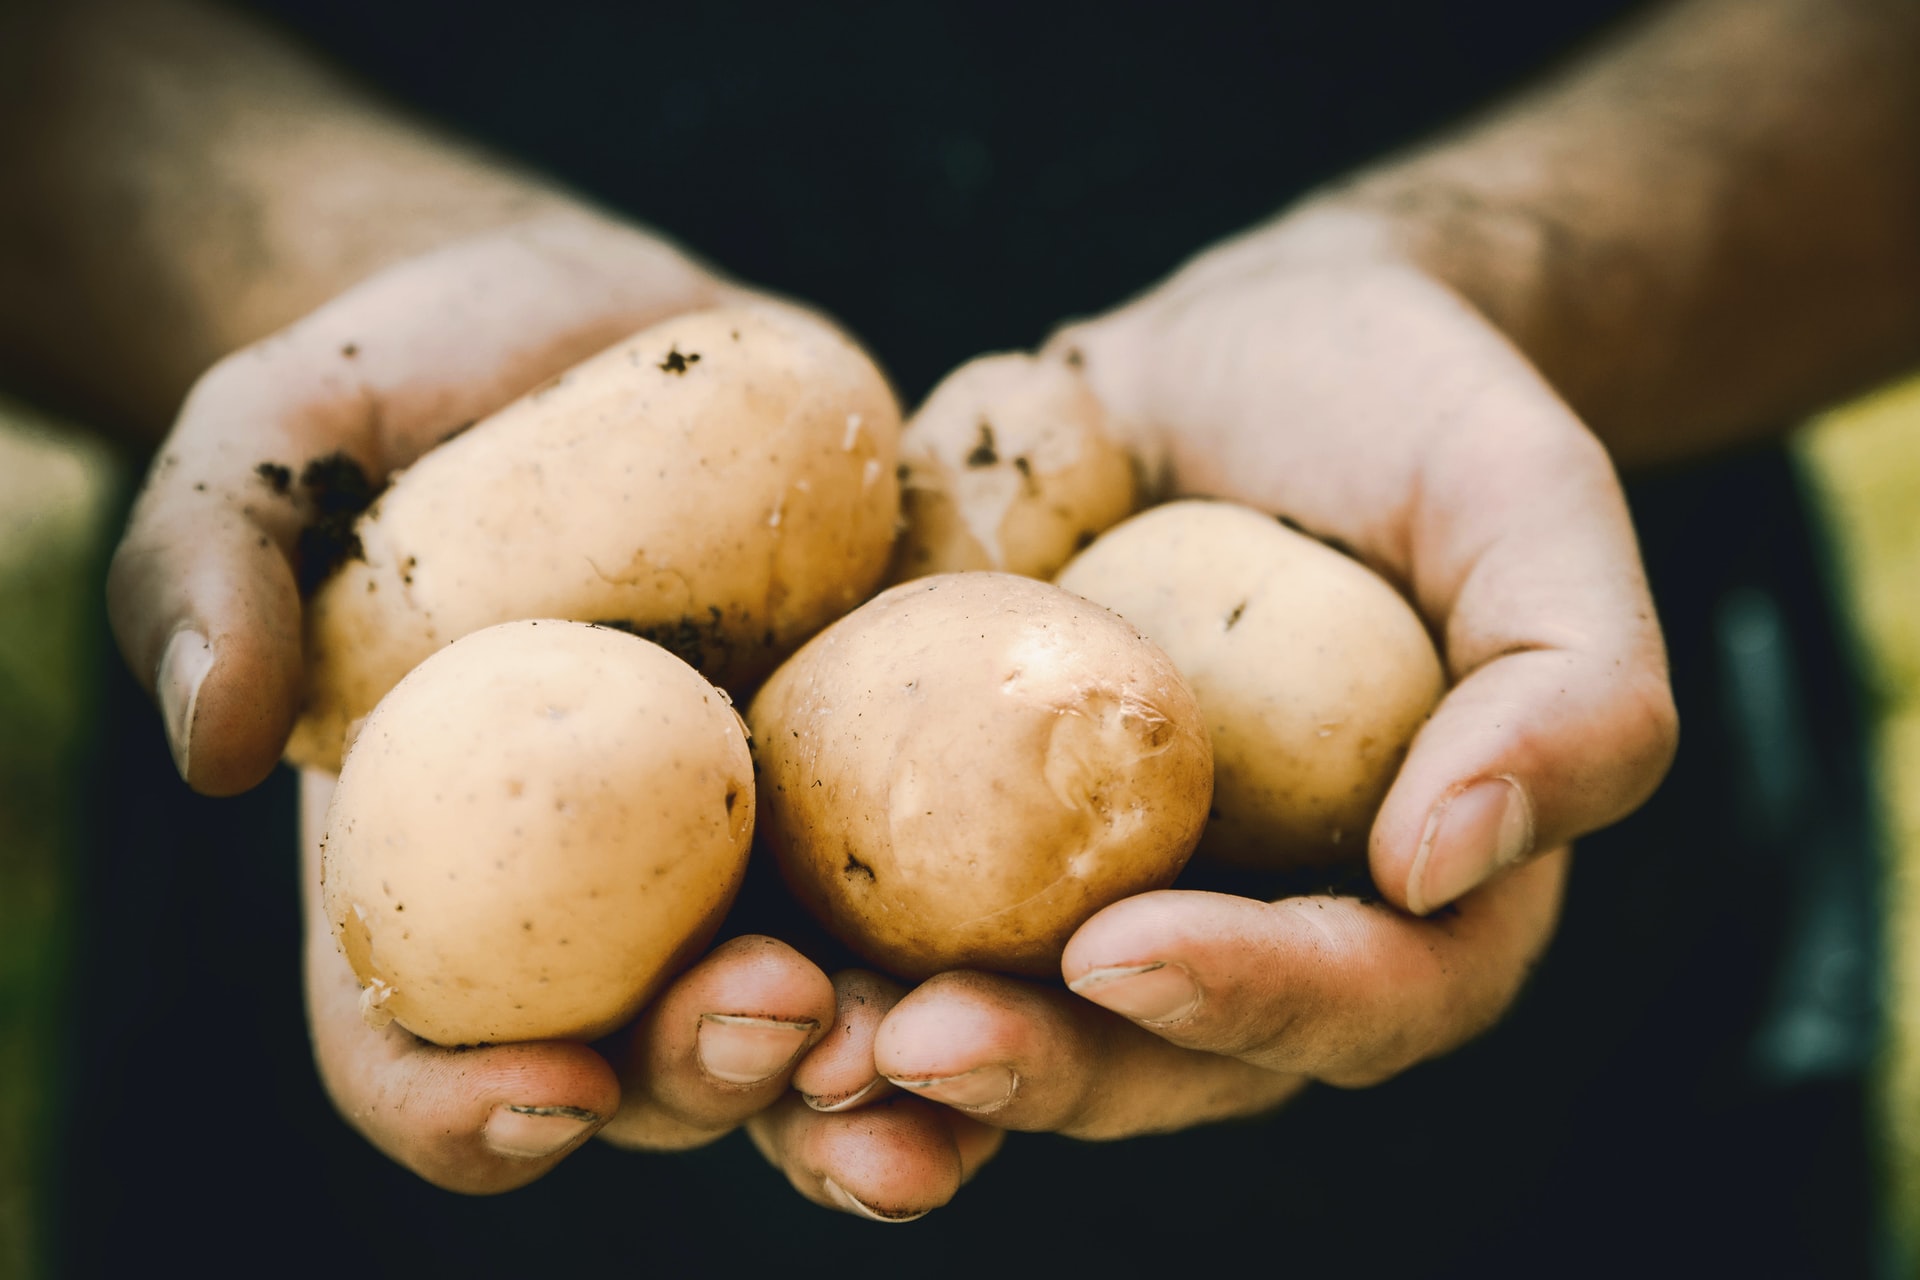  How to grow organic potatoes